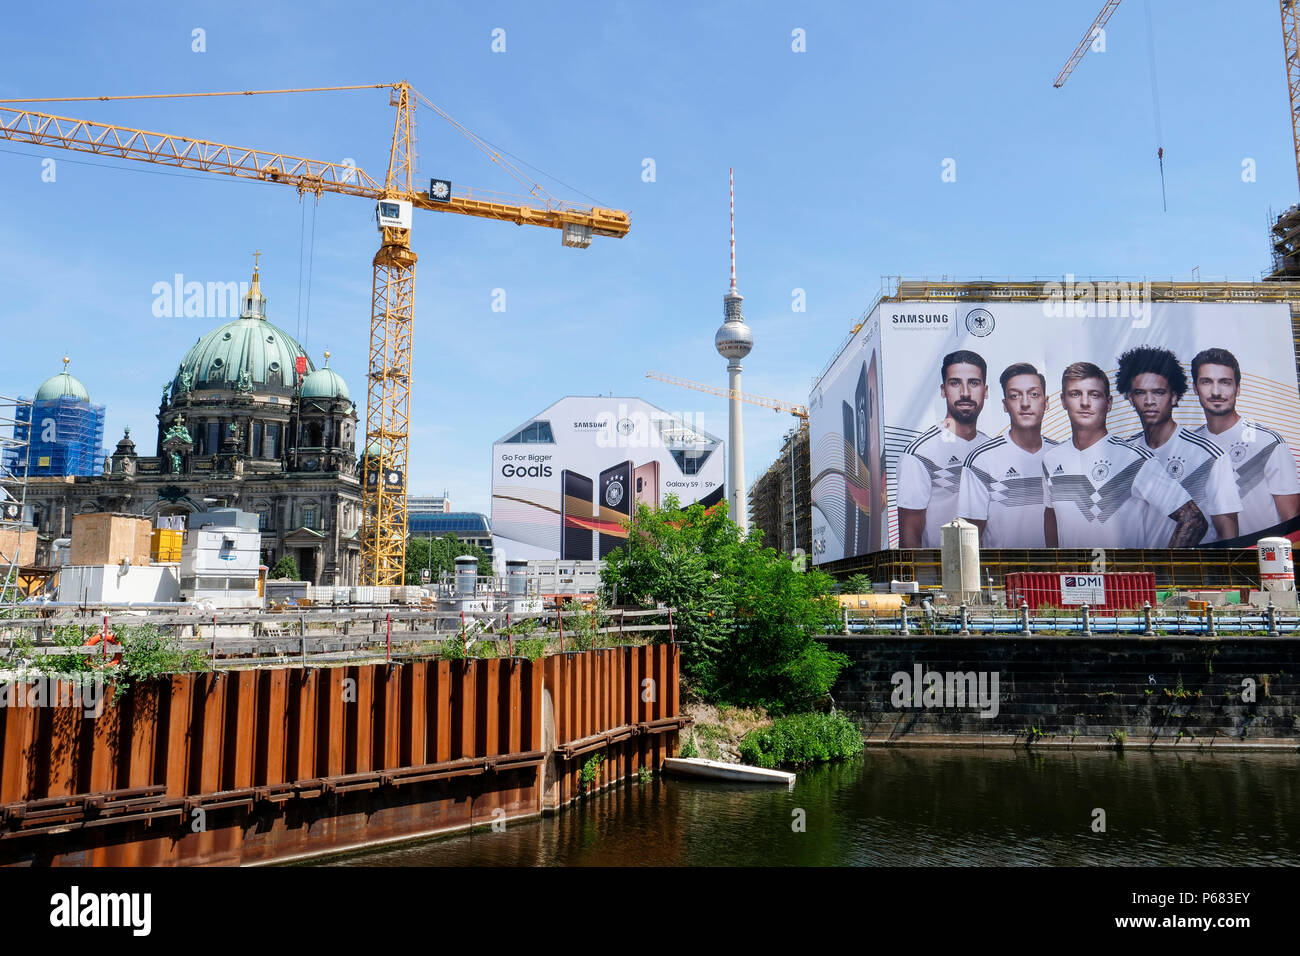 Alemania, Berlín, gran anuncio de Samsung con el equipo alemán de fútbol durante el campeonato mundial de la Fifa 2018 en Rusia Foto de stock